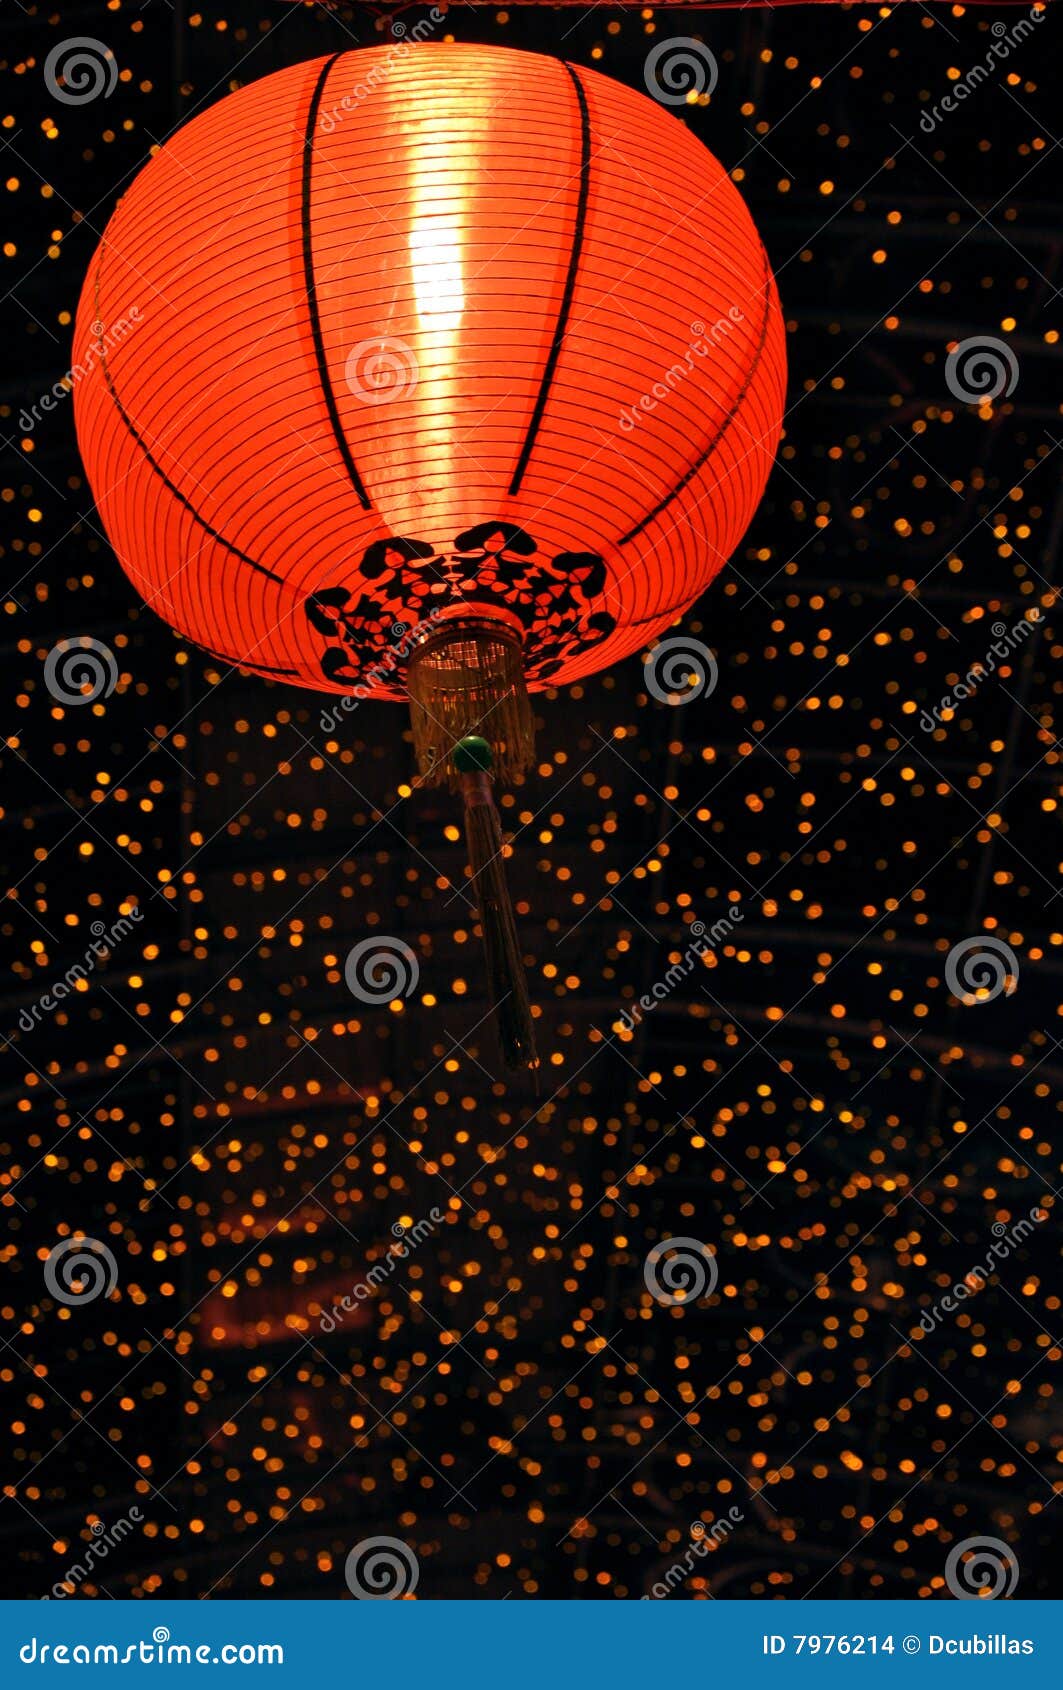 Red Chinese Lantern at Night. Red paper lantern at night. Photo taken during Chinese New Year.